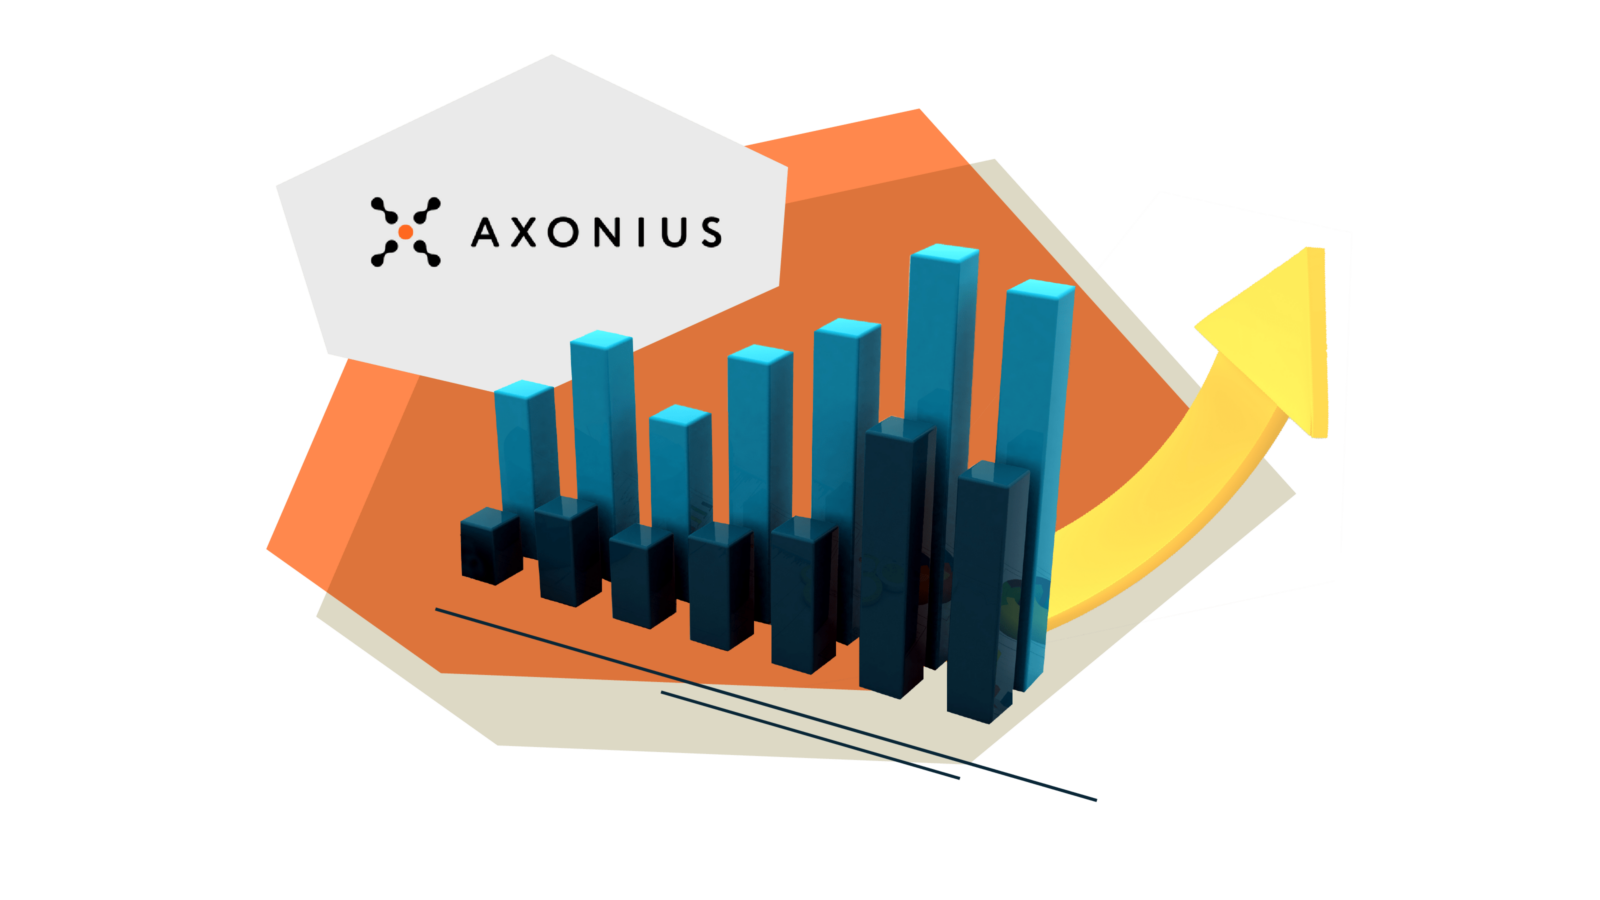 Axonius 100M ARR Milestone